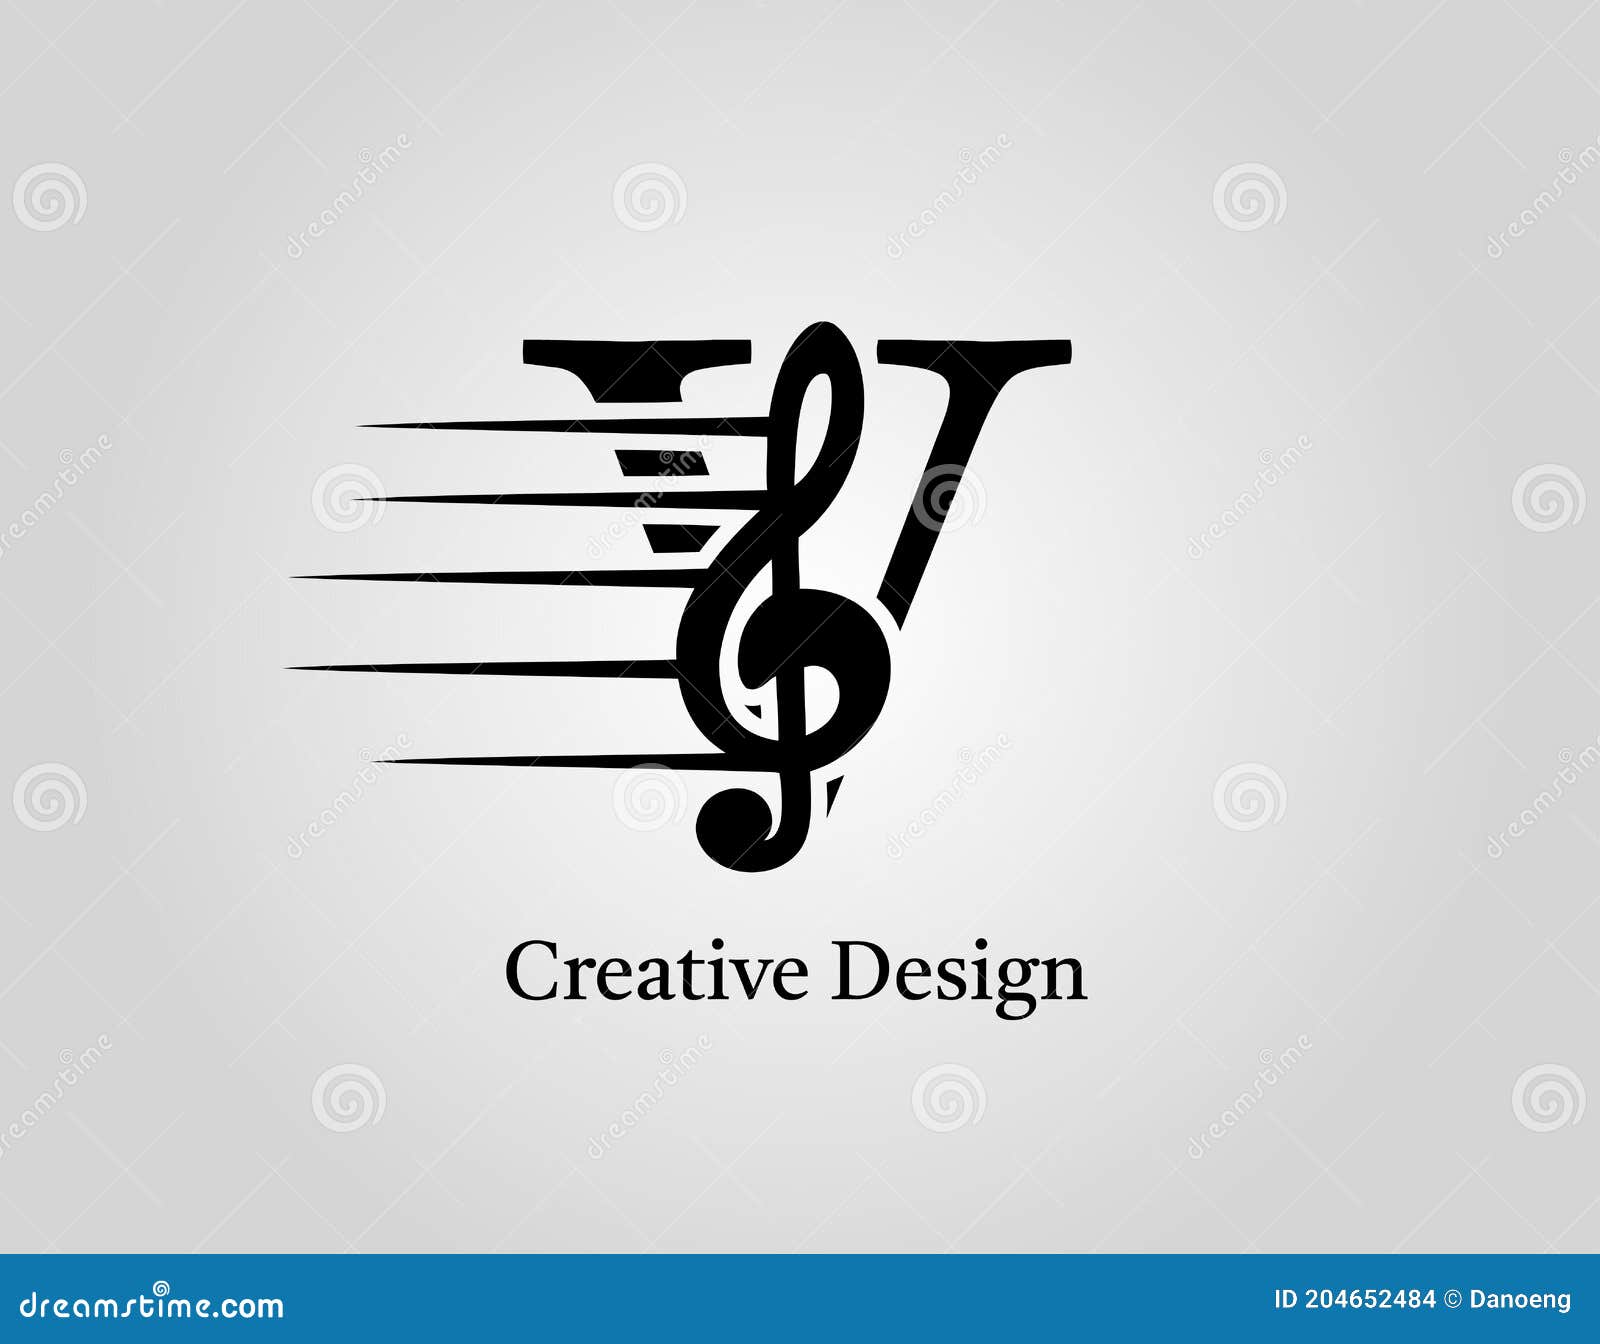 Vector - Letter V Logo  Initials logo design, Music logo design